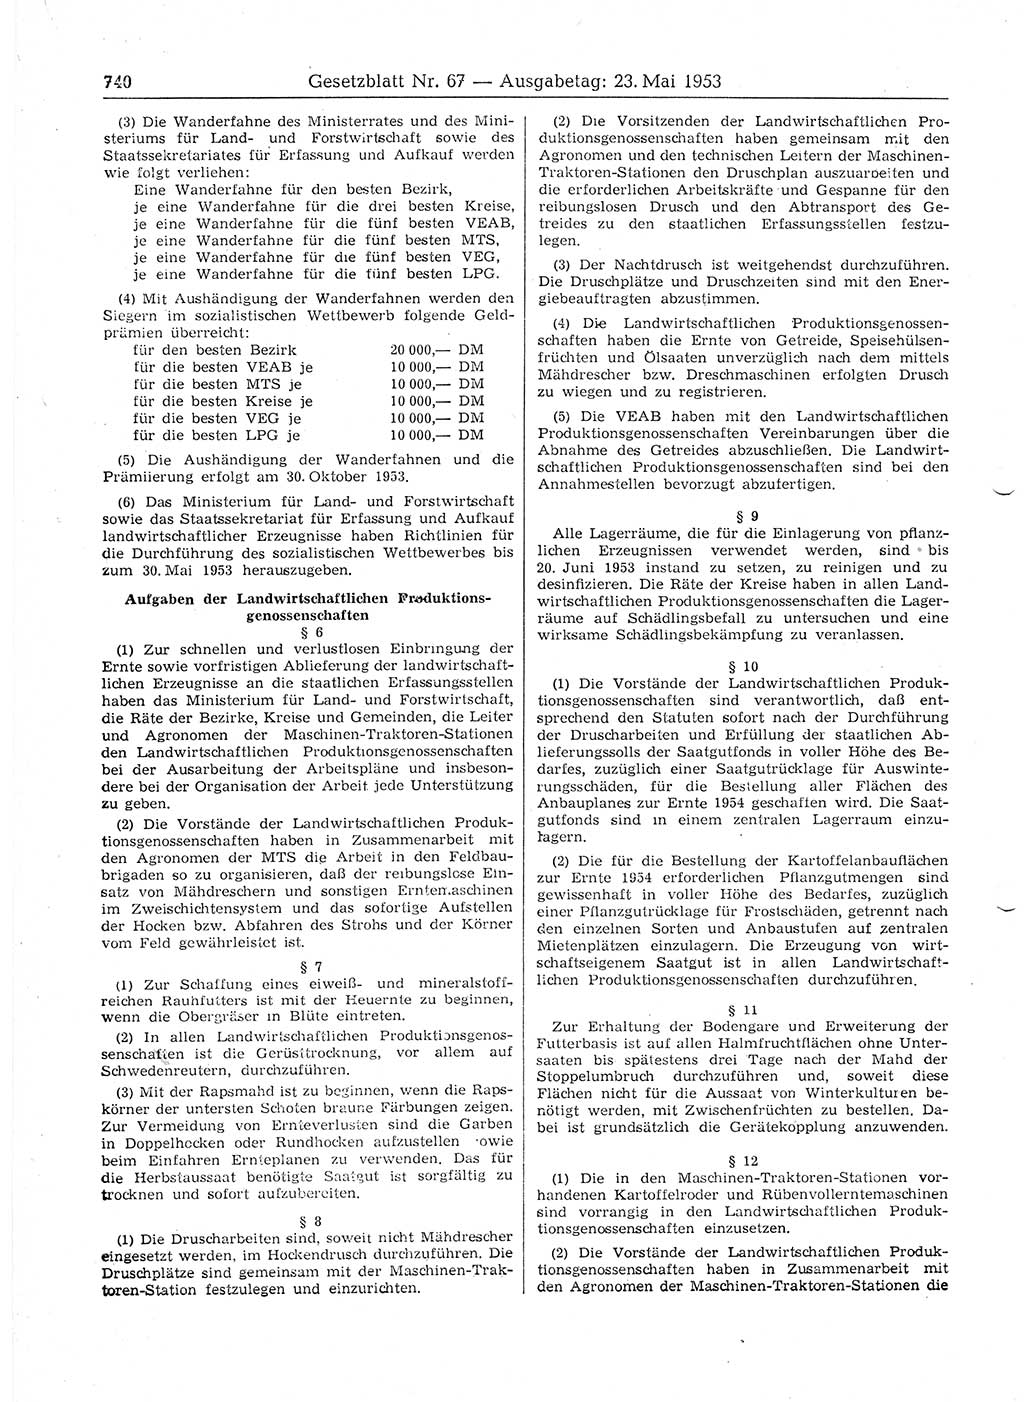 Gesetzblatt (GBl.) der Deutschen Demokratischen Republik (DDR) 1953, Seite 740 (GBl. DDR 1953, S. 740)